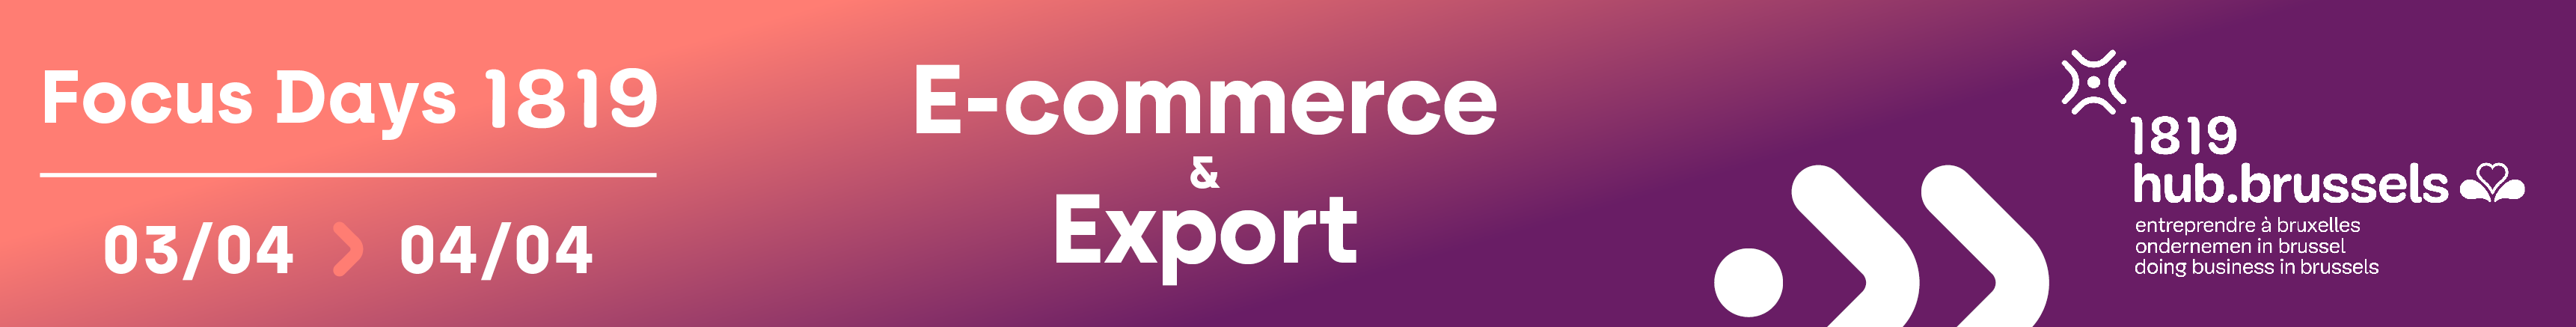 FD-Bannière-e-commerce-export